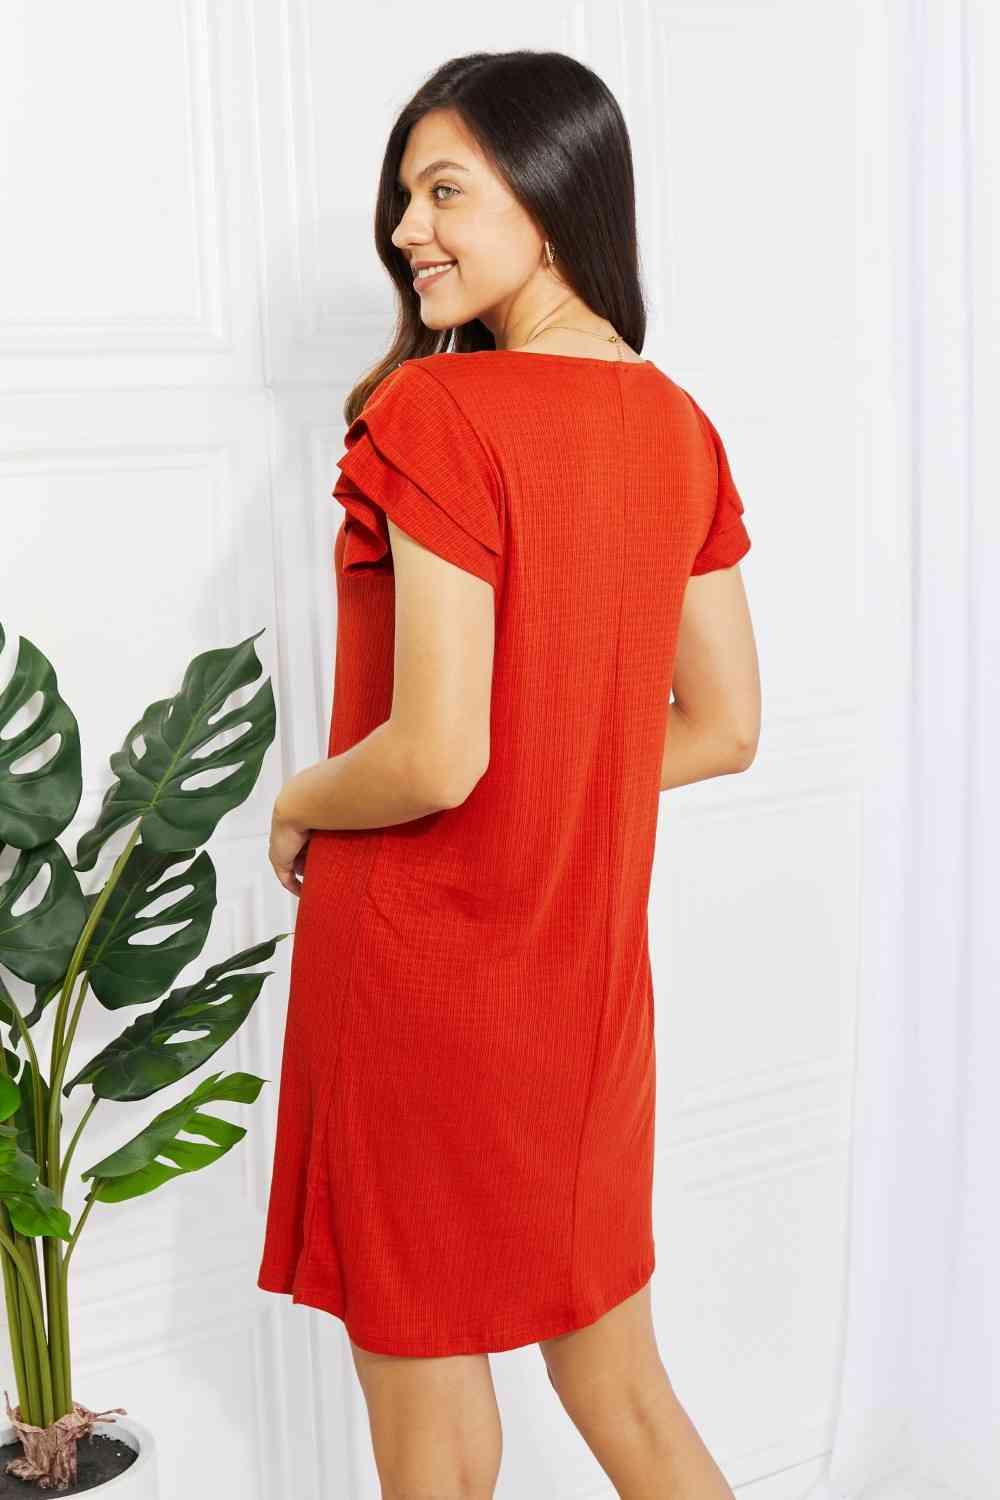 Zenana Living Life Full Size Layered Ruffle Sleeve Dress - AMIClubwear